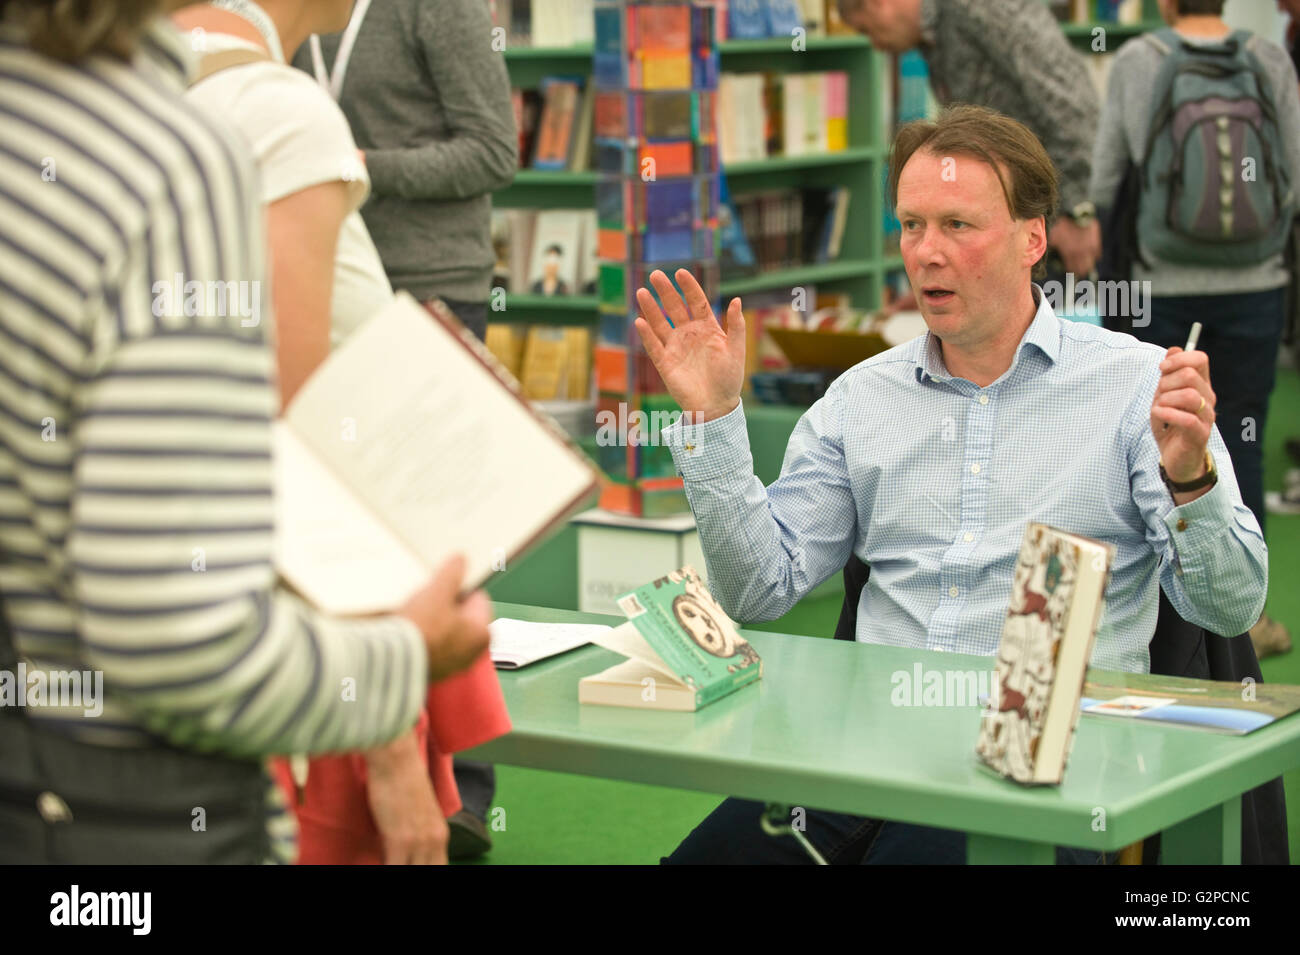 John Lewis-Stempel autor firma de libros en la librería en Hay Festival 2016 Foto de stock